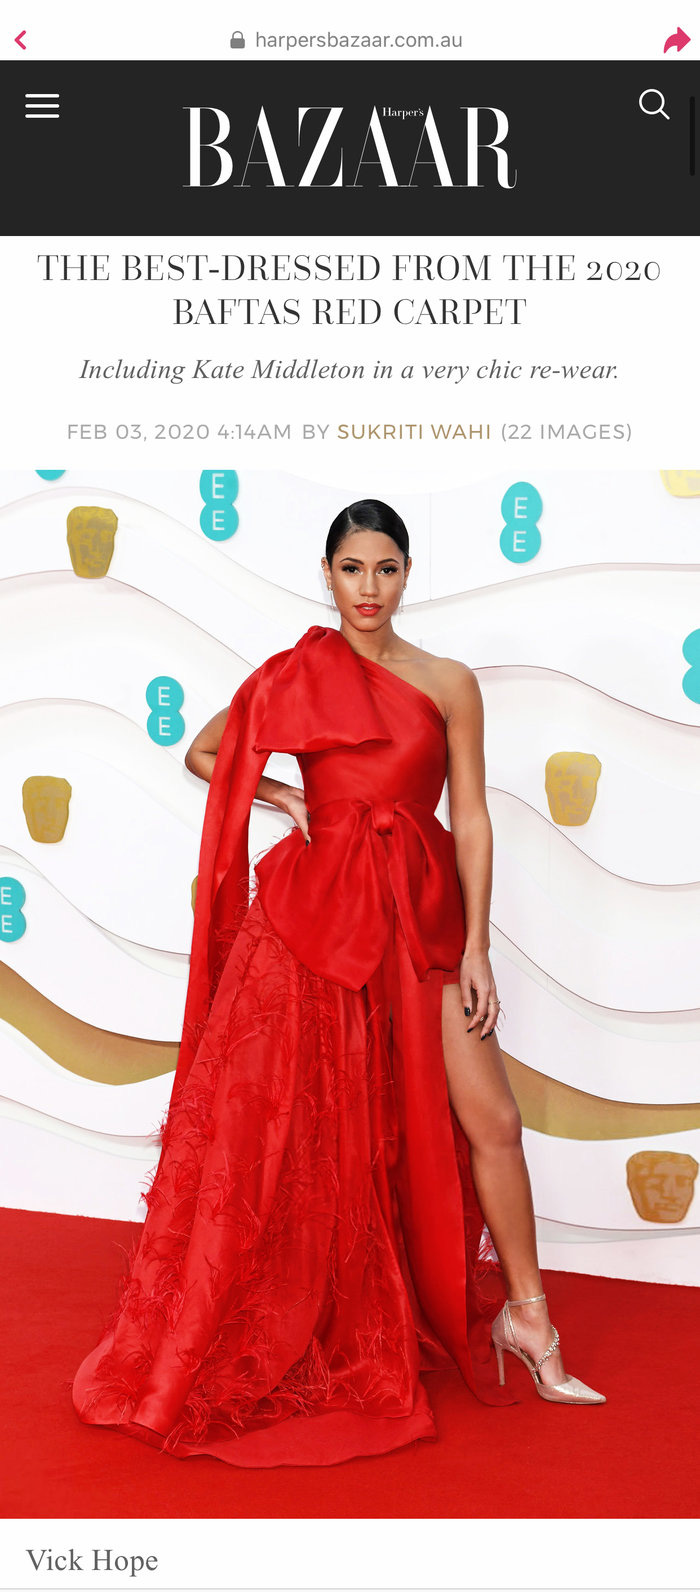 Bộ đầm đỏ rực rỡ của NTK Việt được vinh danh là một trong những thiết kế đẹp nhất trên thảm đỏ BAFTA 2020 - Ảnh 5.